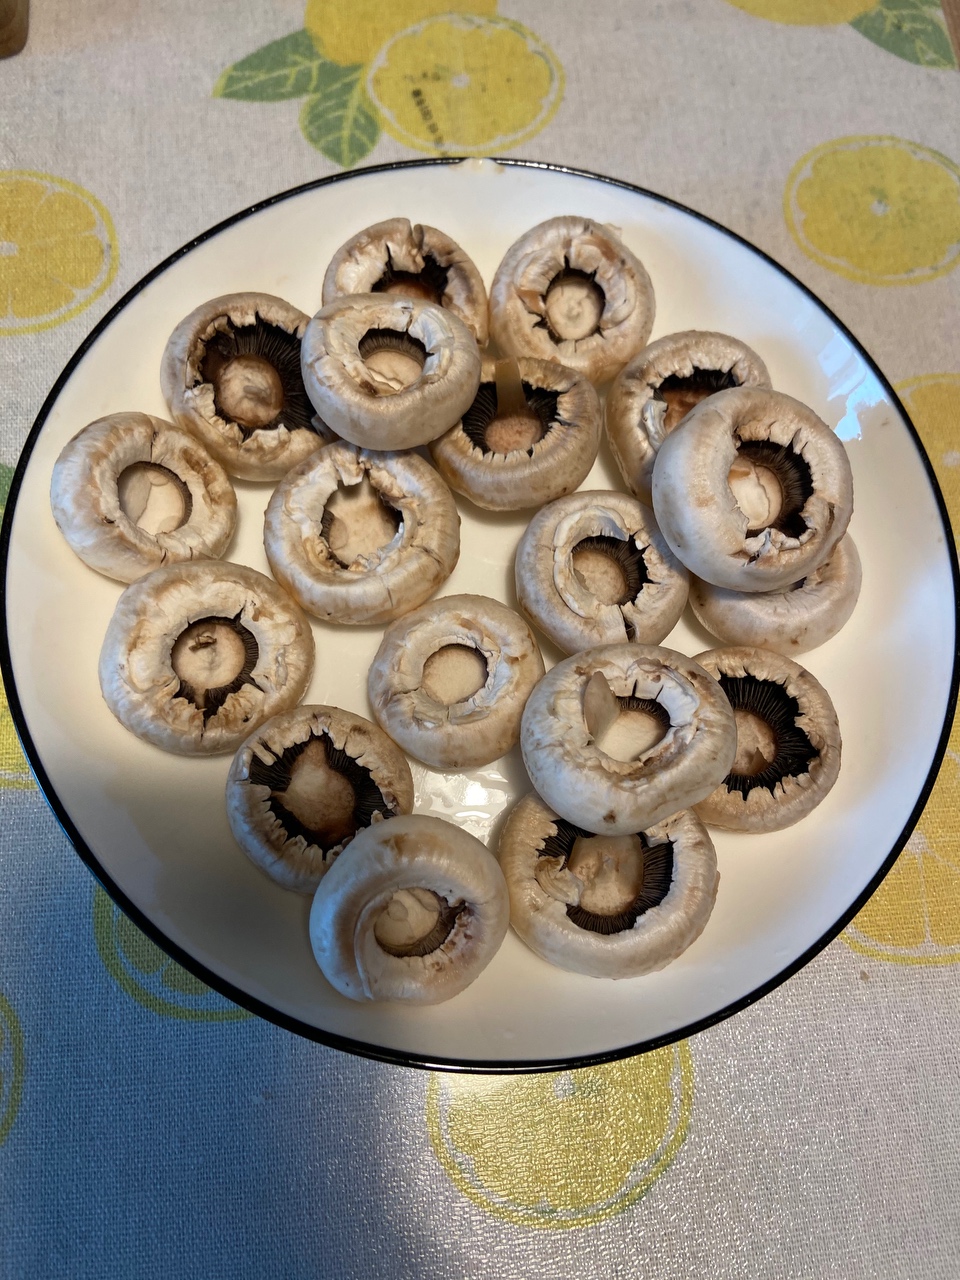 10分钟健康菜谱—香煎白玉菇的做法